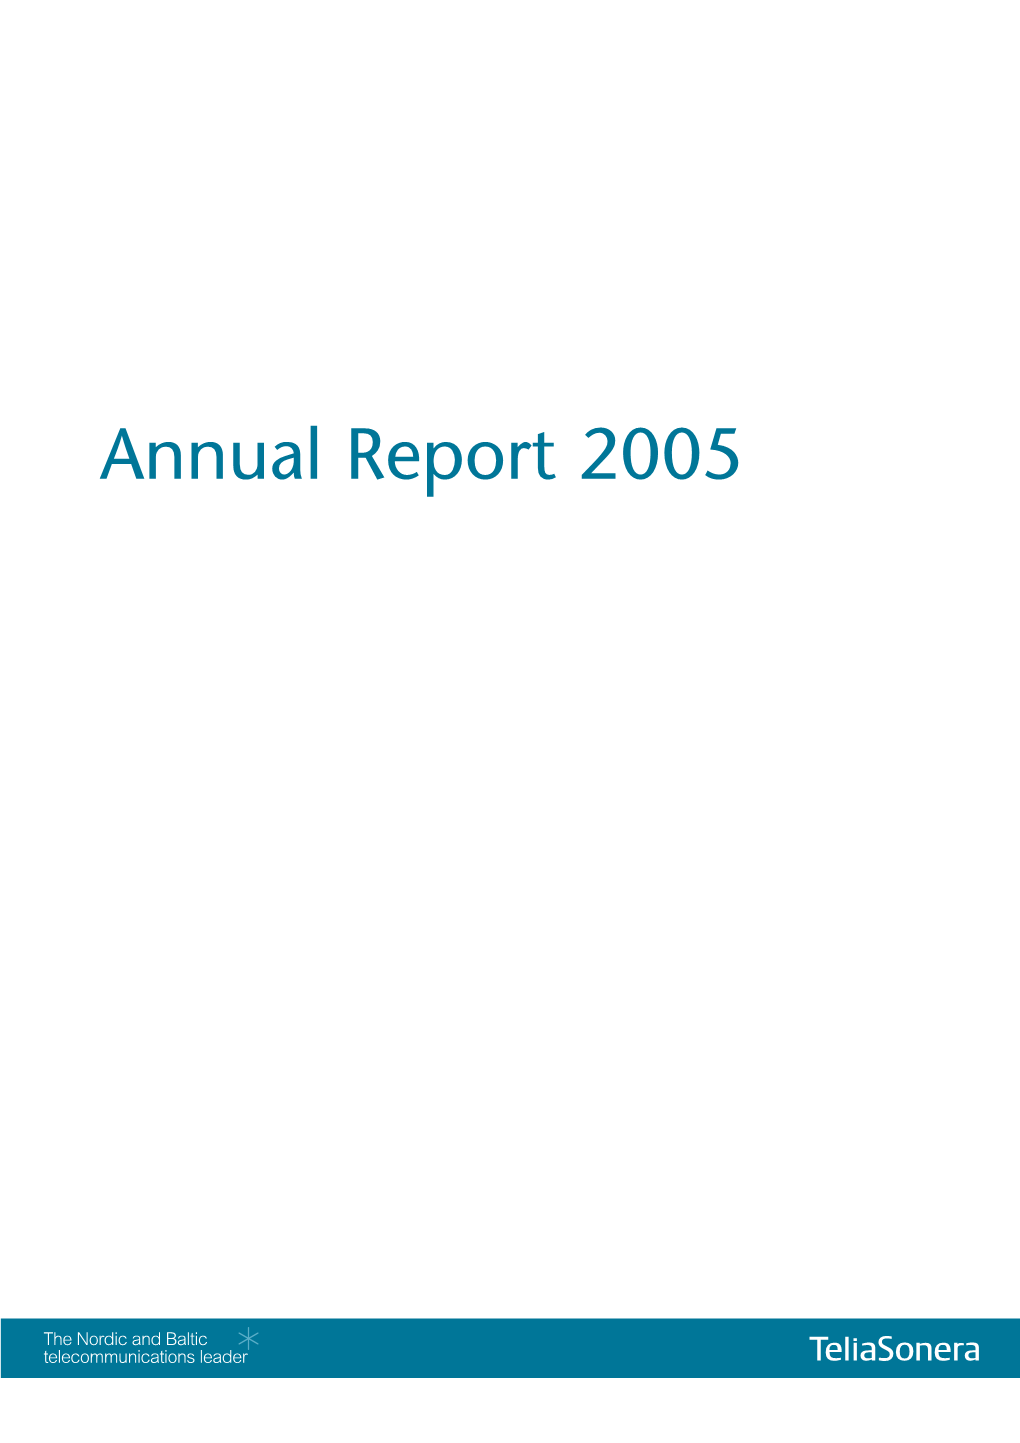 Annual Report 2005 (PDF)